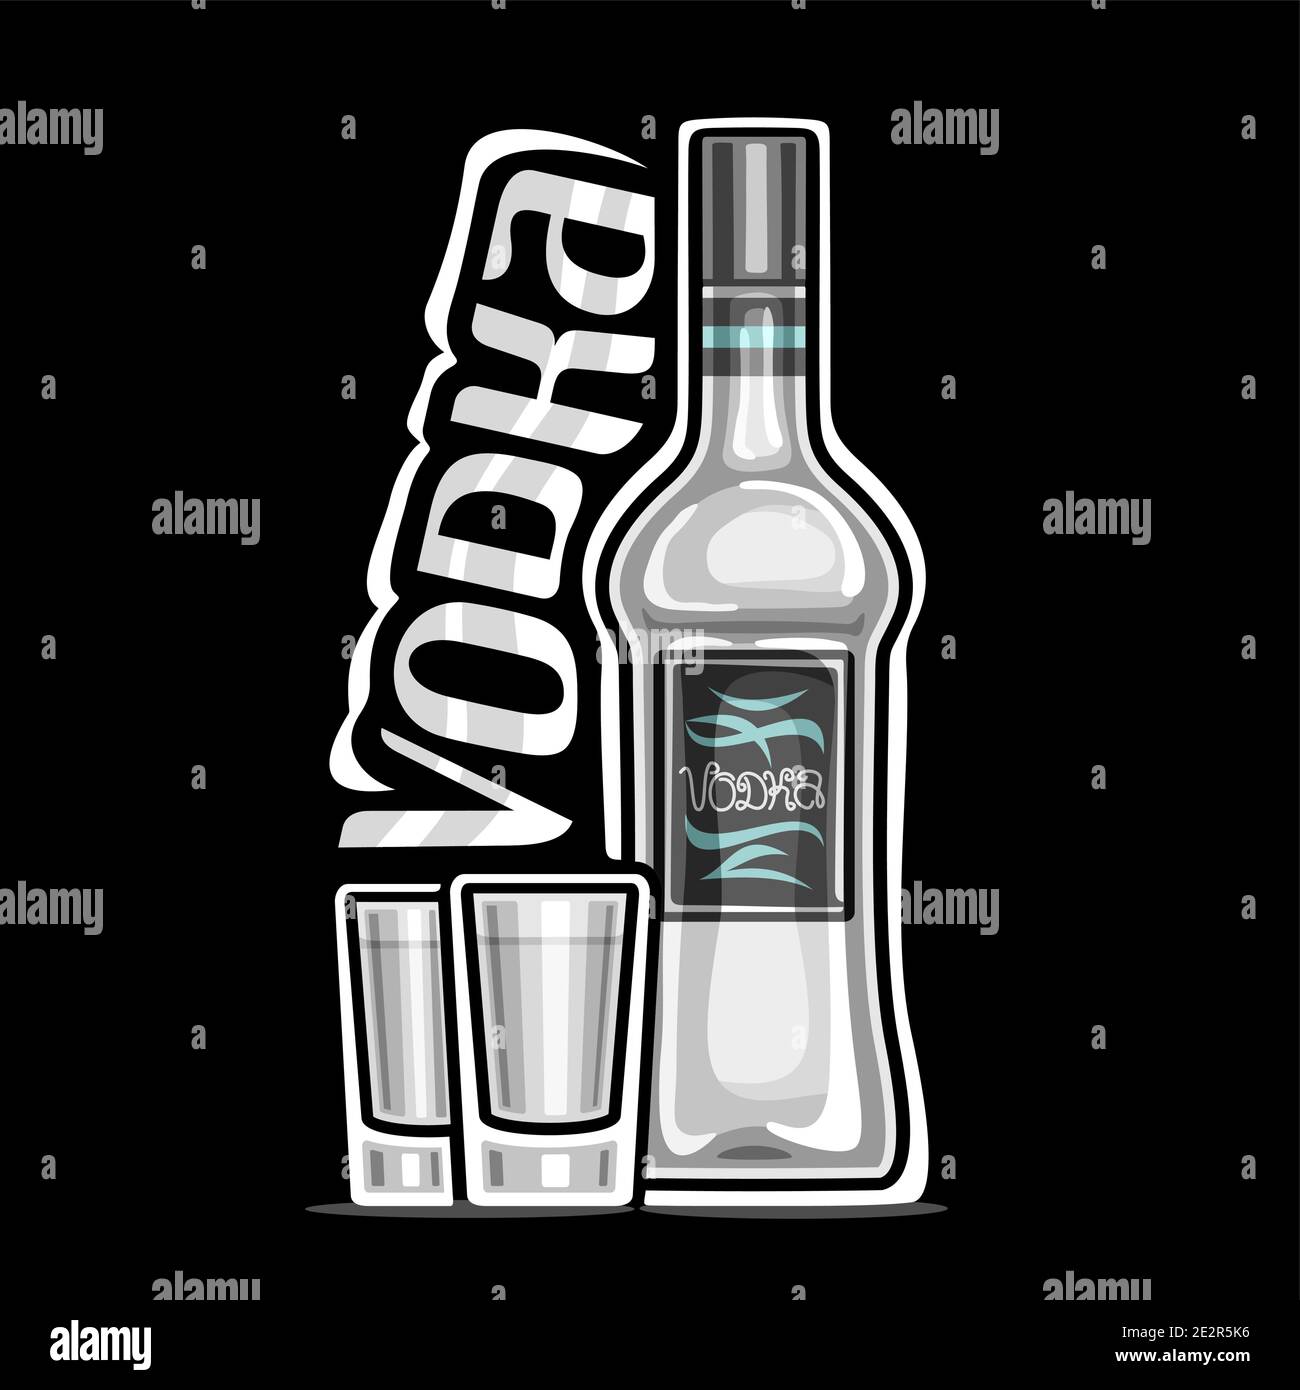 Logo Vector pour Vodka, illustration de la bouteille blanche avec étiquette  décorative et 2 verres à dose complète avec vodka réfrigérée, étiquette  carrée avec uniq Image Vectorielle Stock - Alamy